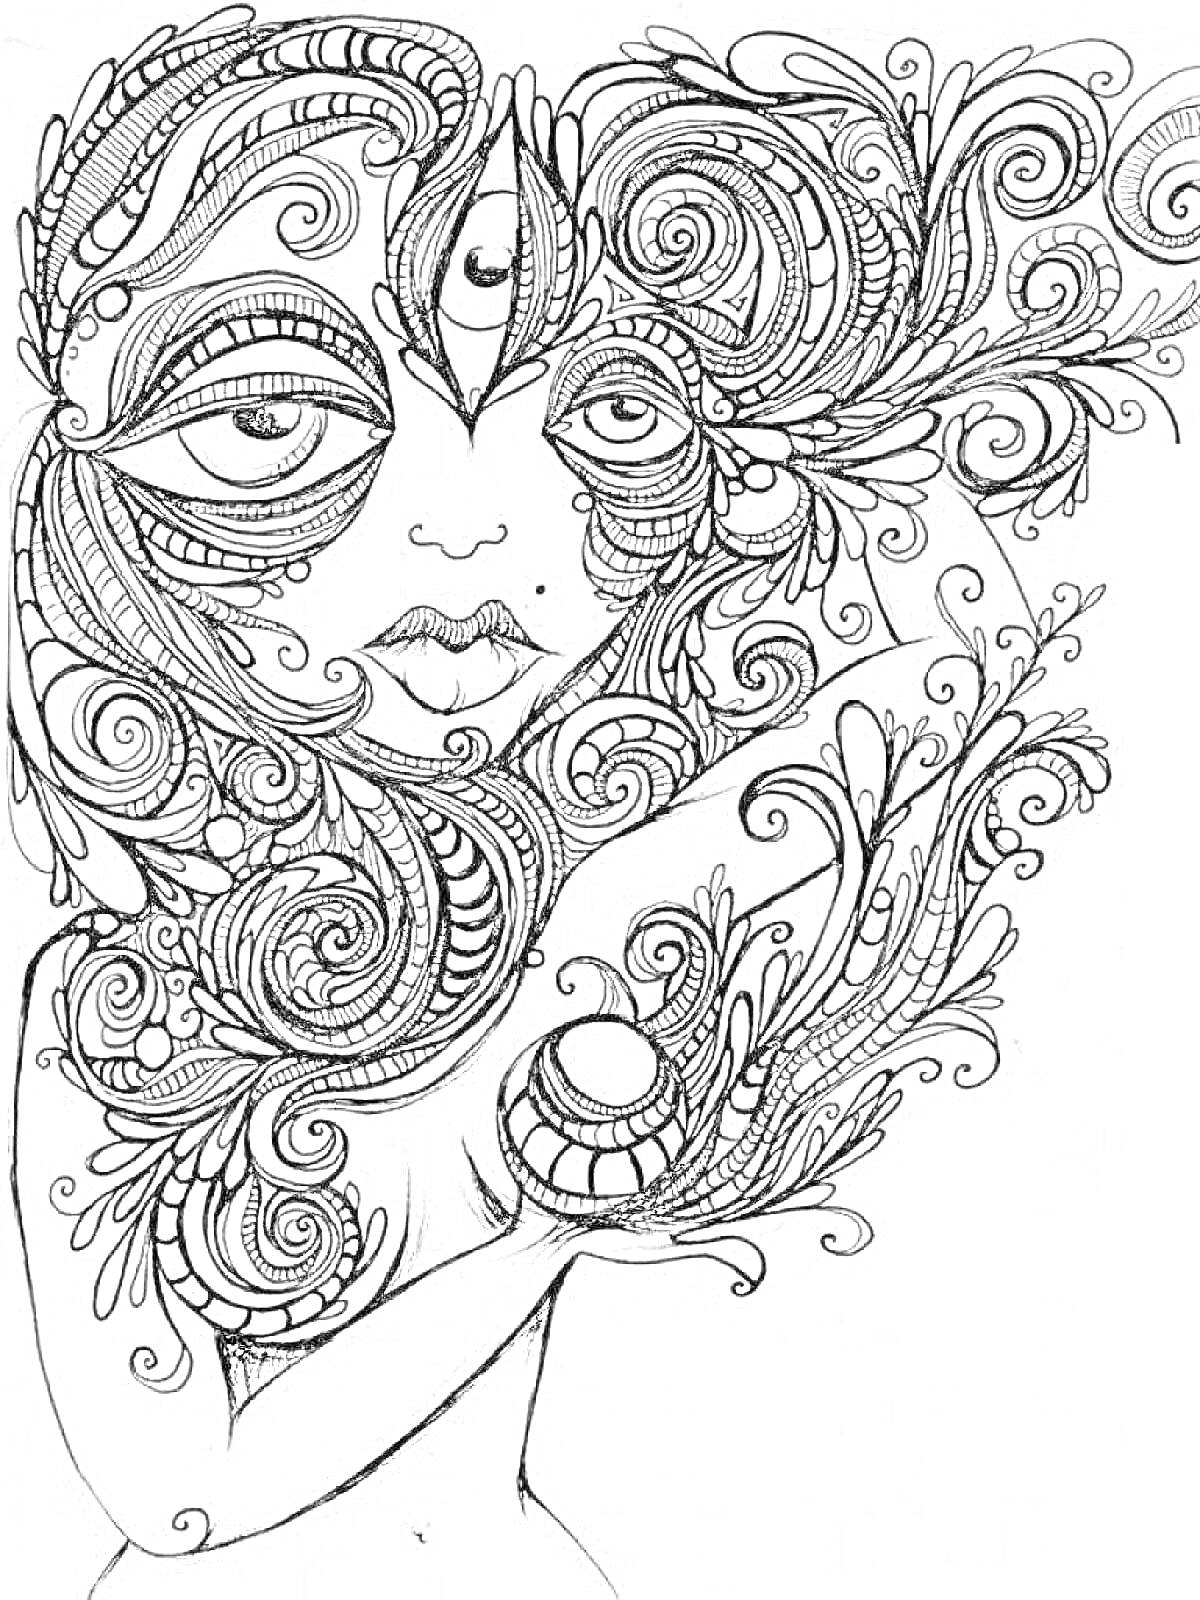 Женщина с большим глазом, полумесяцем на лбу и волнистыми психоделическими узорами, окружённая сложными цветочными элементами